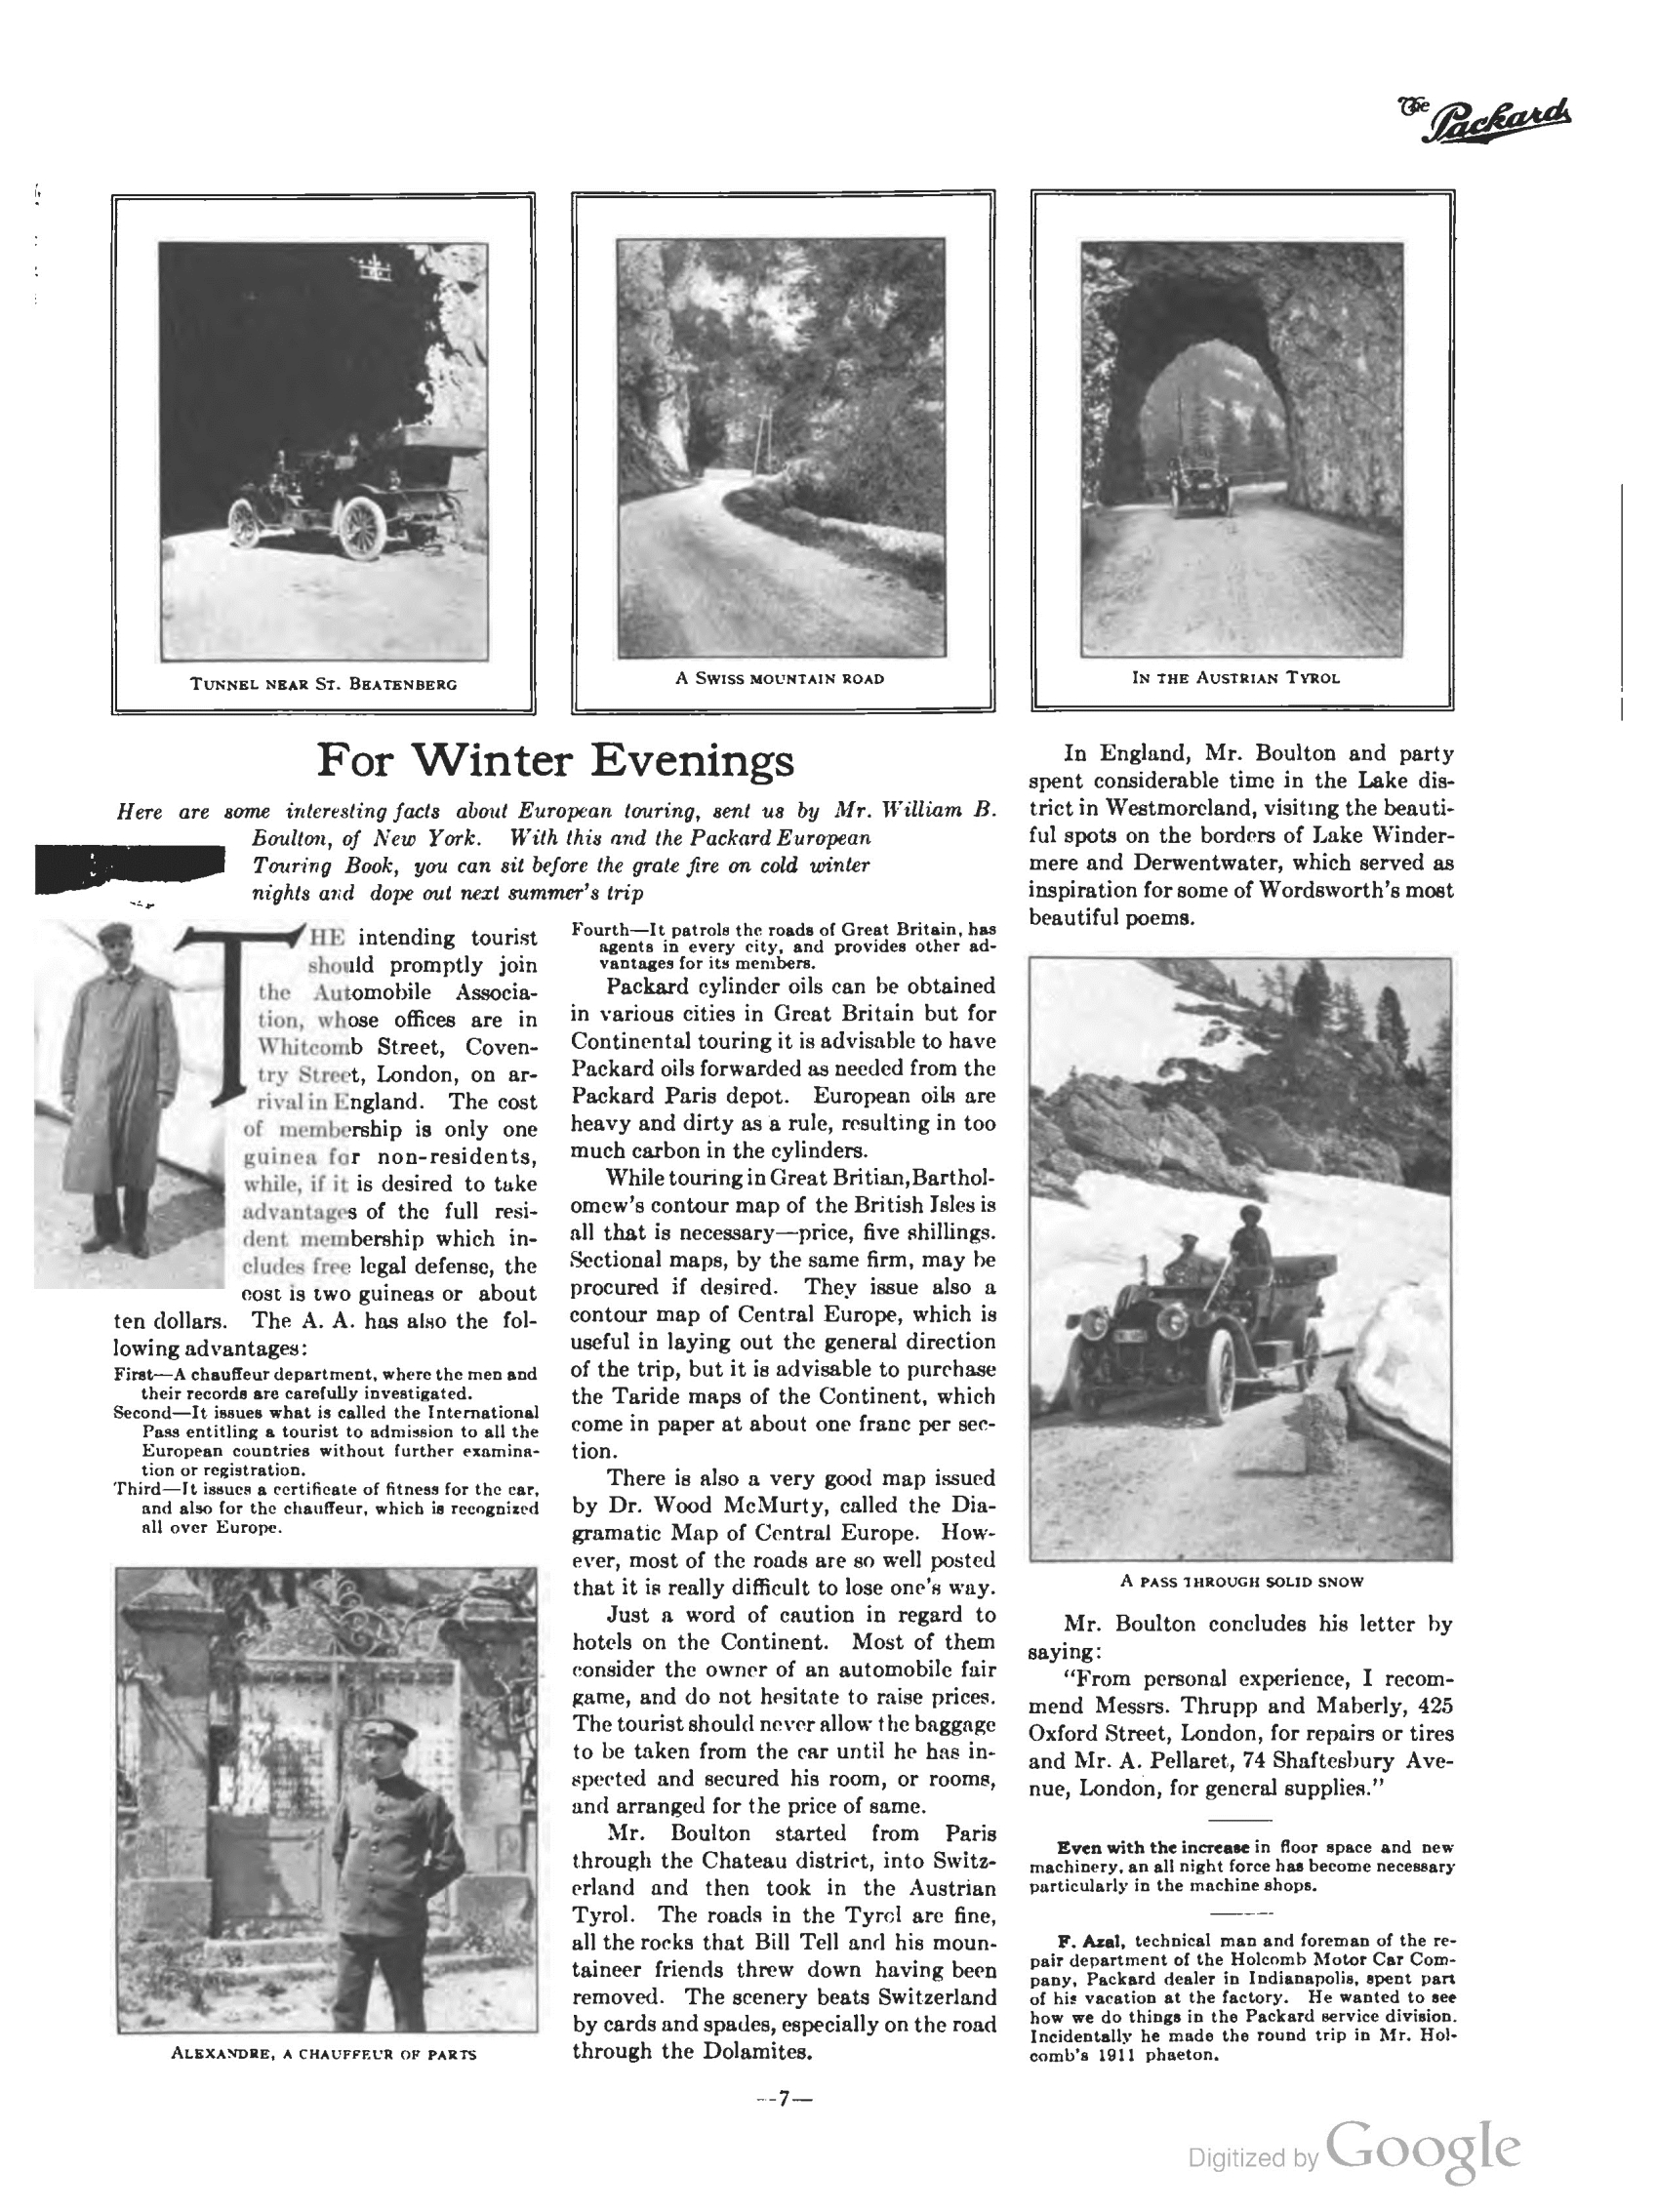 1910_The_Packard_Newsletter-201